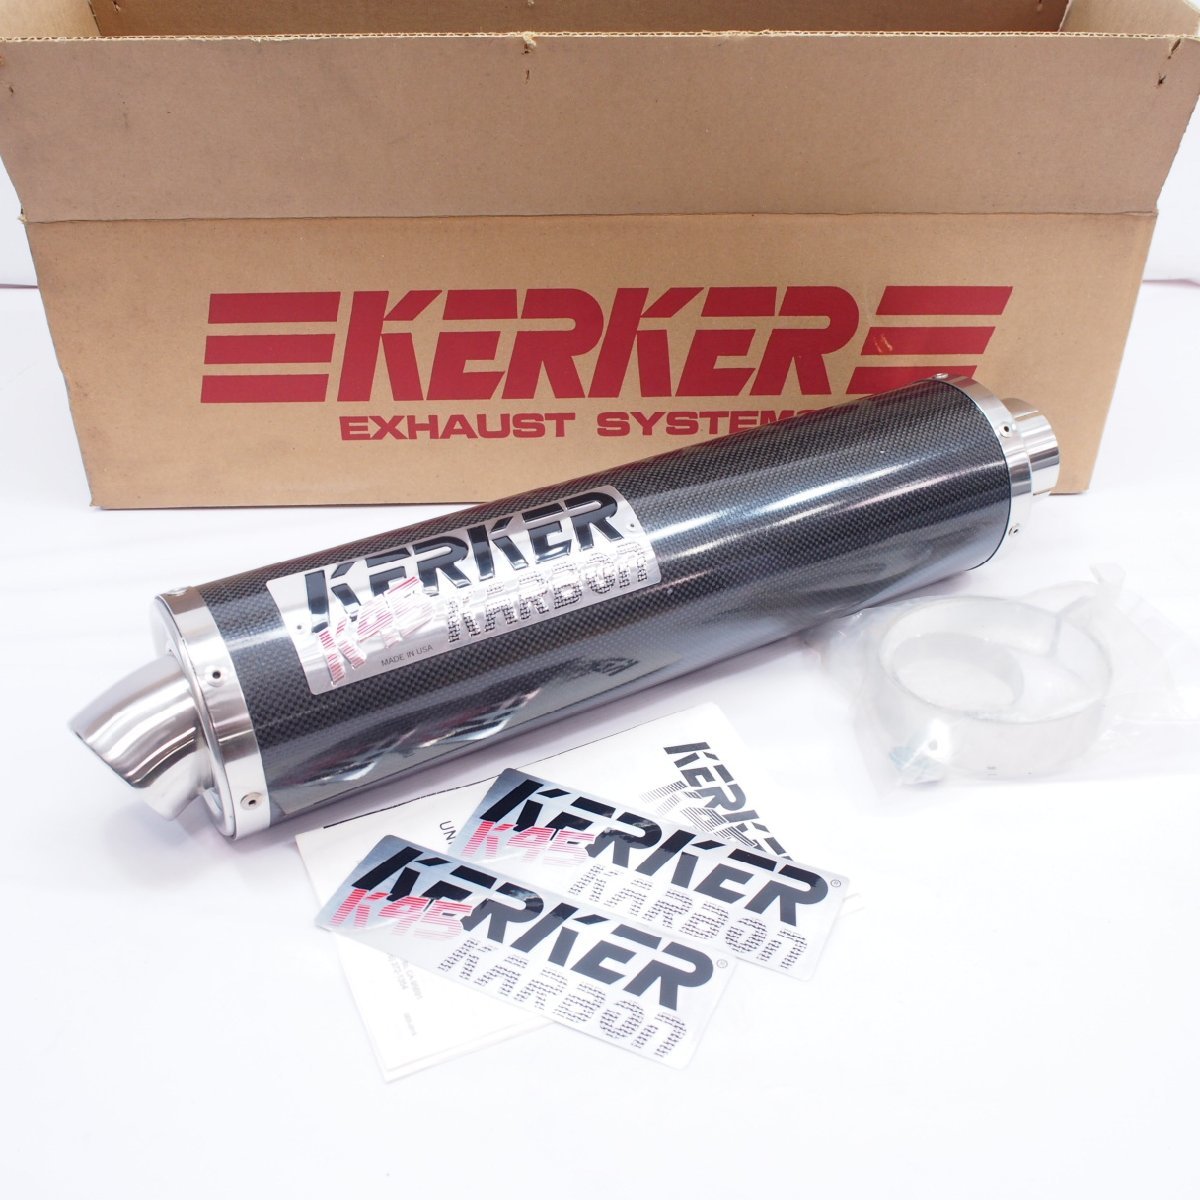 KERKER K45 carbon silencer FZ-1 feather XJR1200 XJR1300 FJ1100 XJ750 FZR1000 FZS1000 FZR400 SRX400 SR400